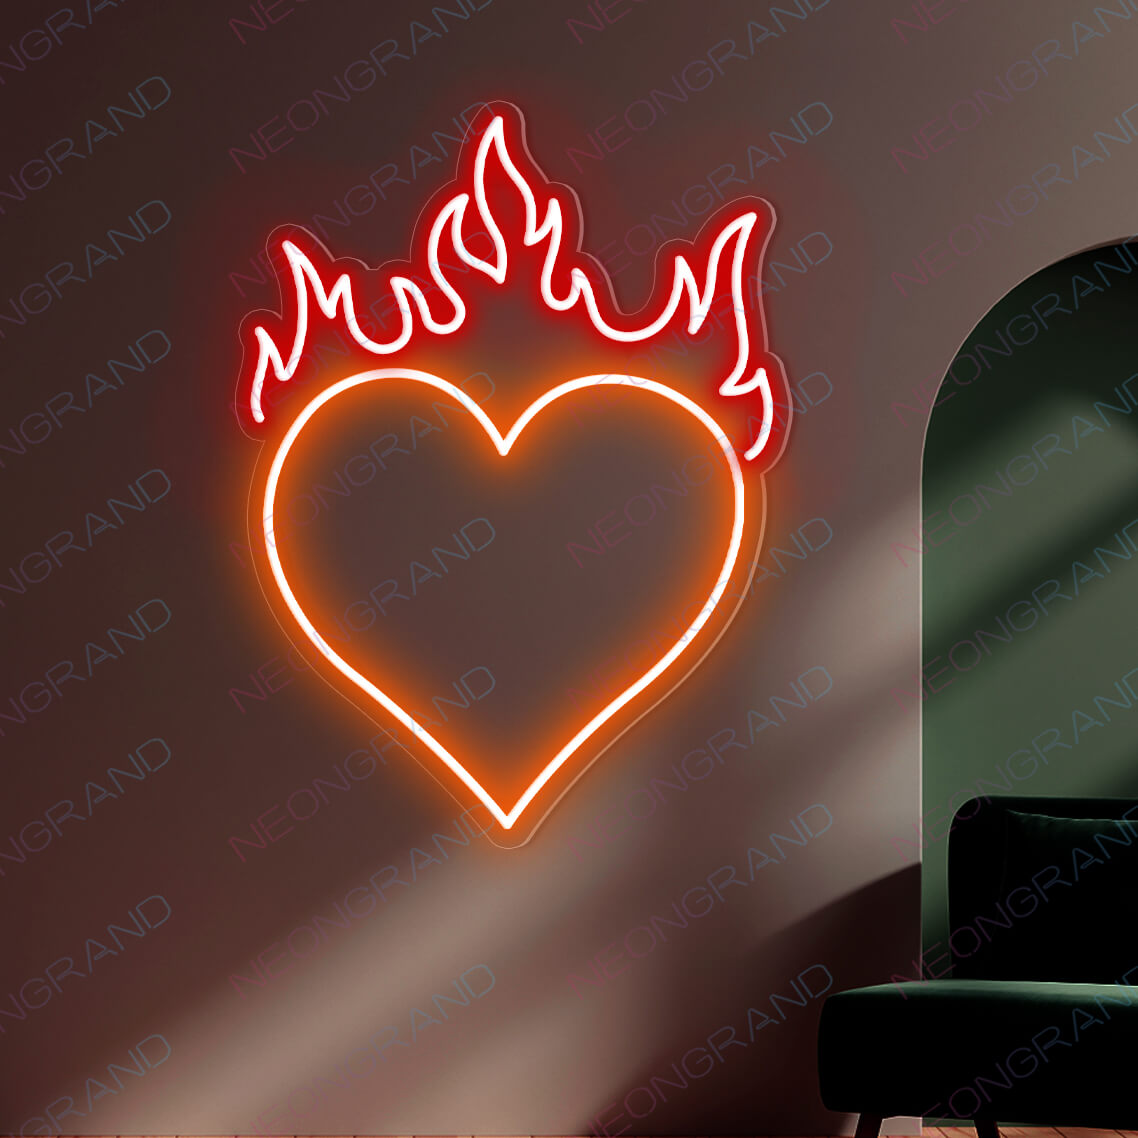 Heart Neon Sign Love Heart Fire Led Light orange